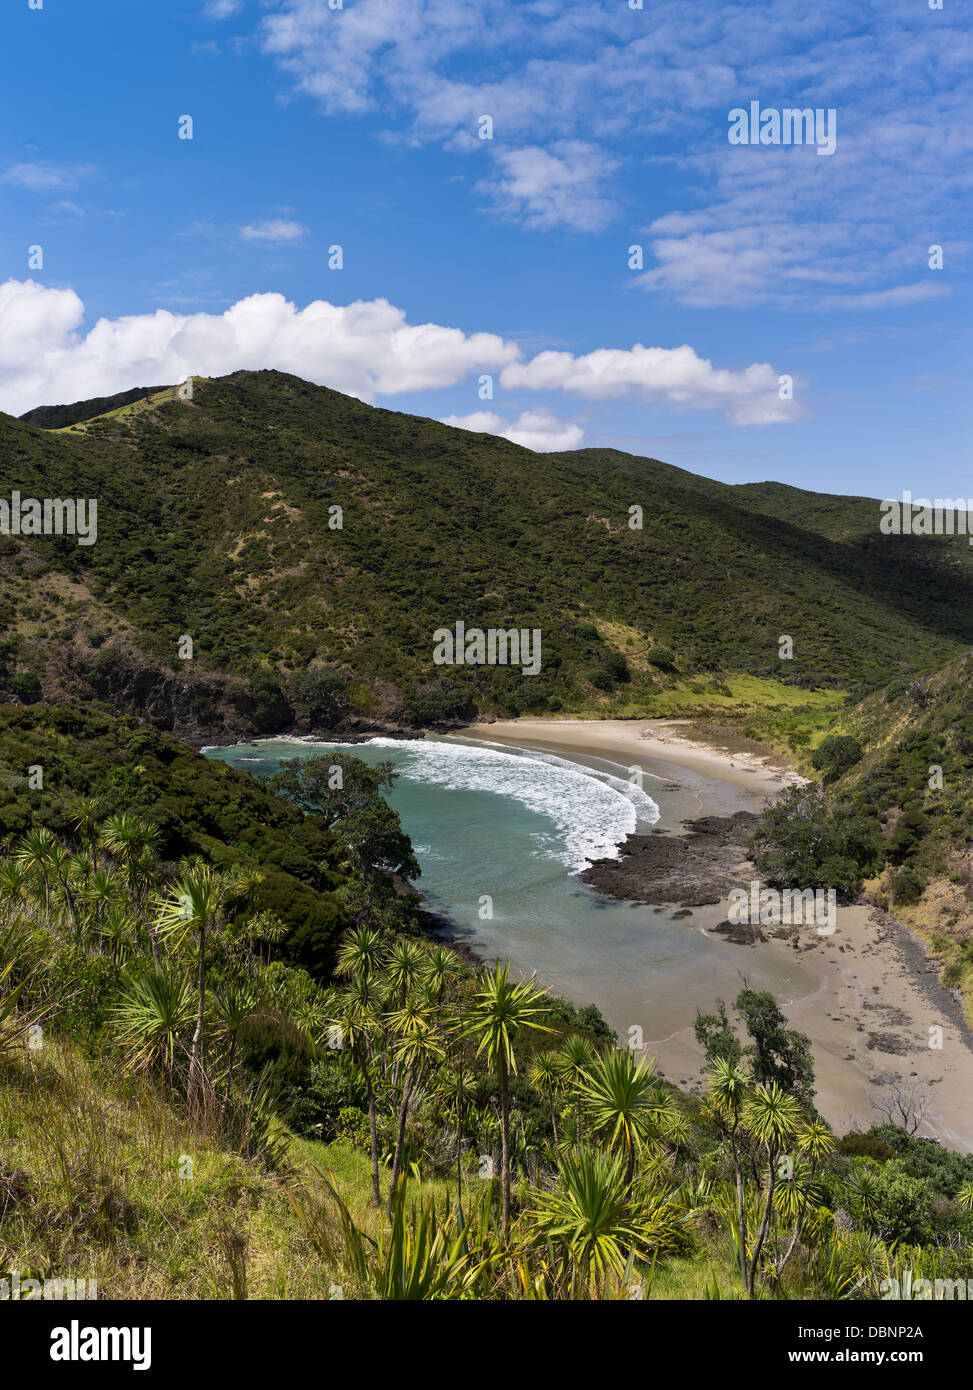 Dh Sandy Bay Cape Reinga Nouvelle-zélande Péninsule Aupouri côte Bush paysage nordique campagne pittoresque du nord Banque D'Images